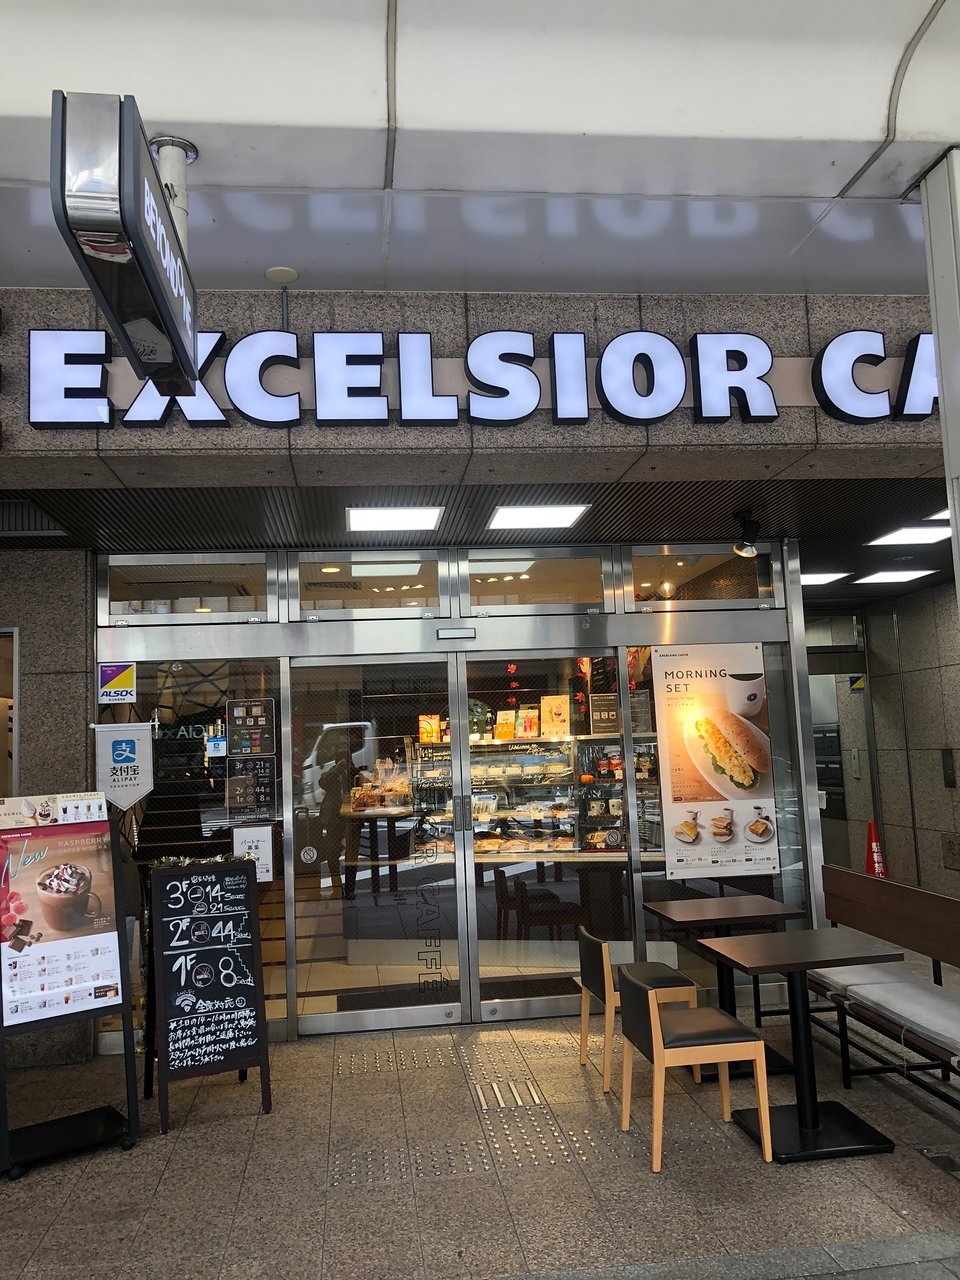 Excelsior Caffe